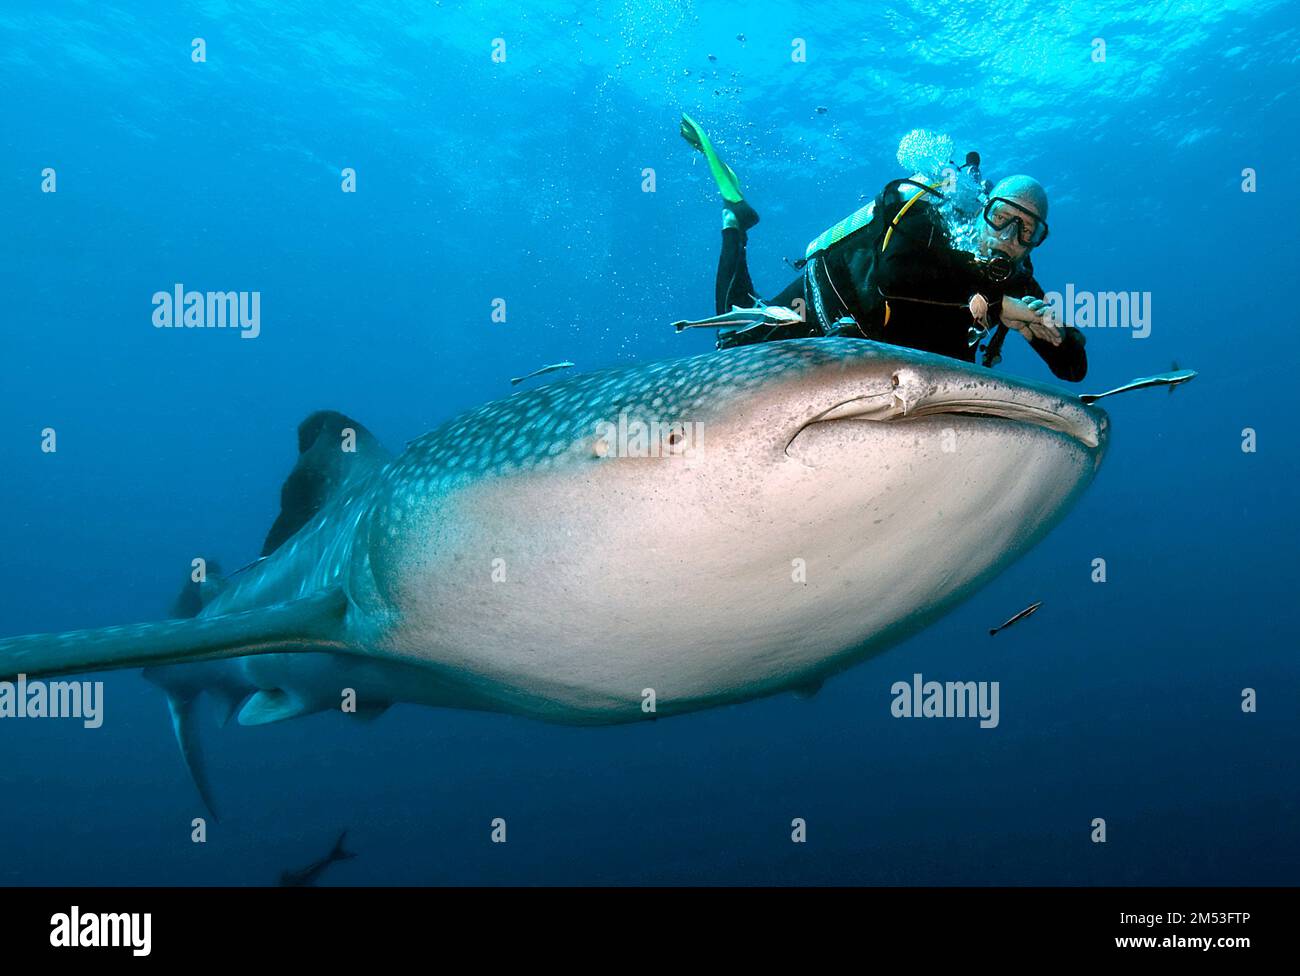 Taucher taucht schwimmt neben Walhai (Rhincodon typus), Indischer Ozean, Hin Daeng, Thailandia, Asien Foto Stock